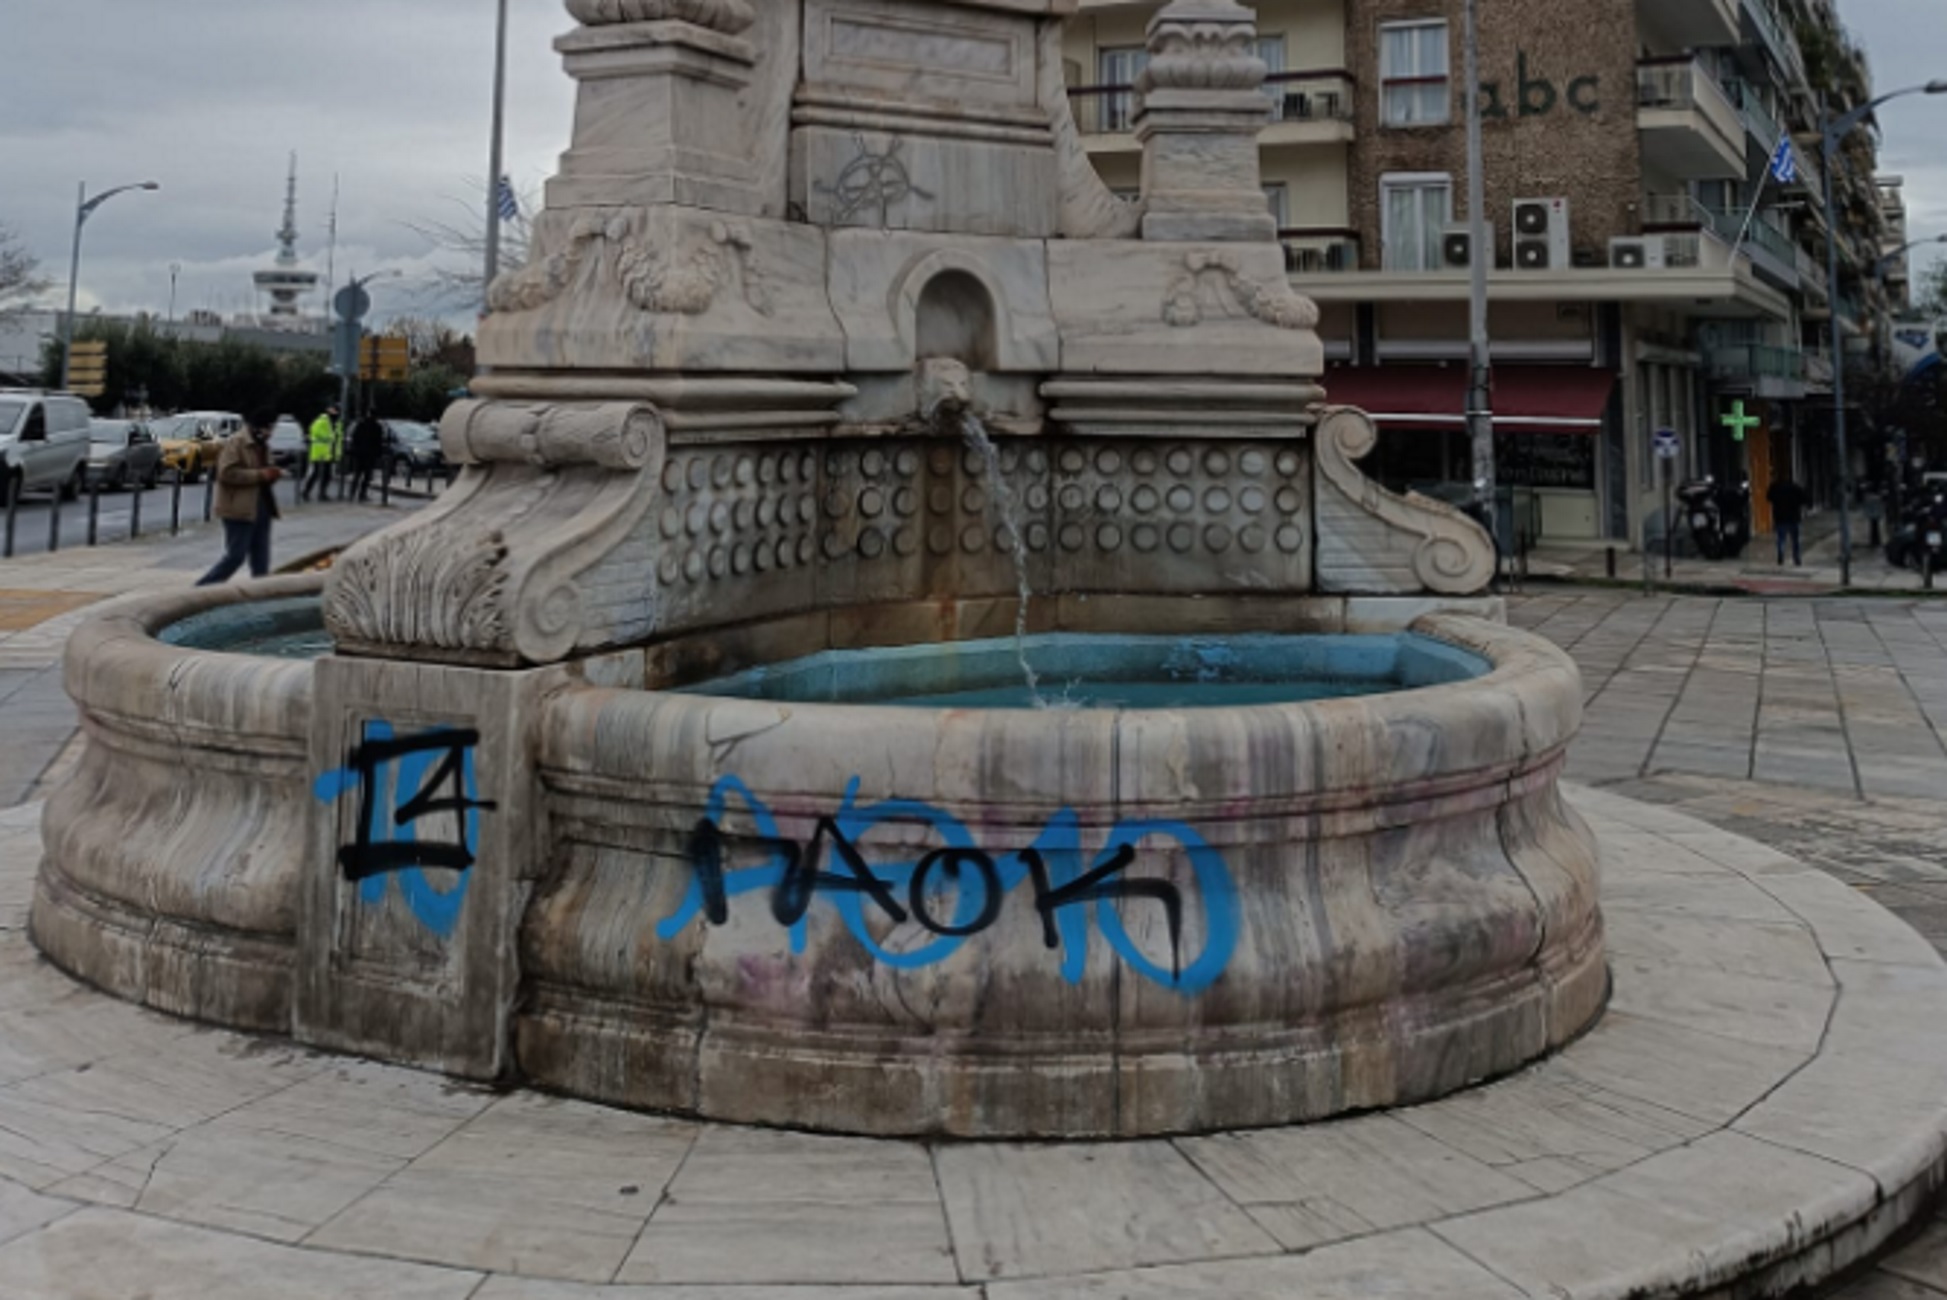 Θεσσαλονίκη: Βανδάλισαν με σπρέι το ιστορικό σιντριβάνι στο κέντρο της πόλης